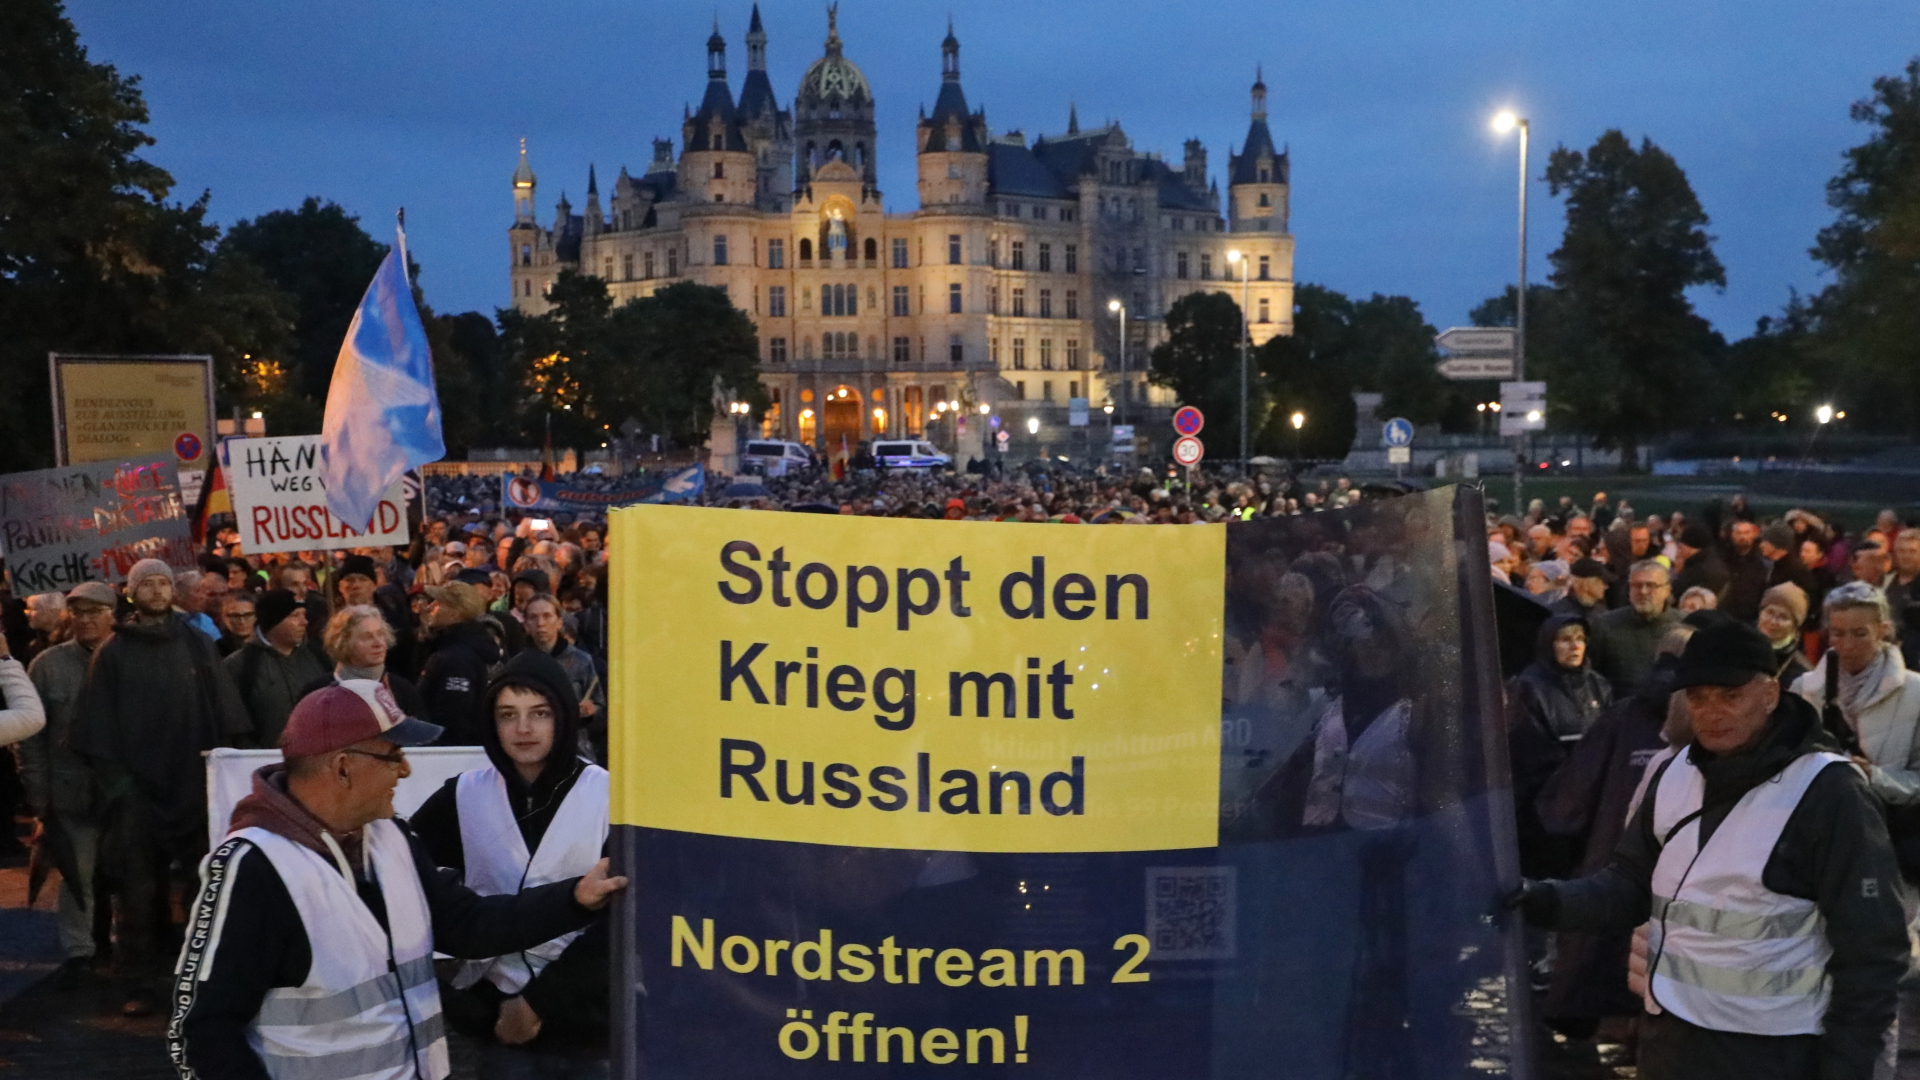 Vor dem Schweriner Schloss treffen sich Teilnehmer einer Demonstration, die gegen die Energiepolitik und deren Folgen protestieren